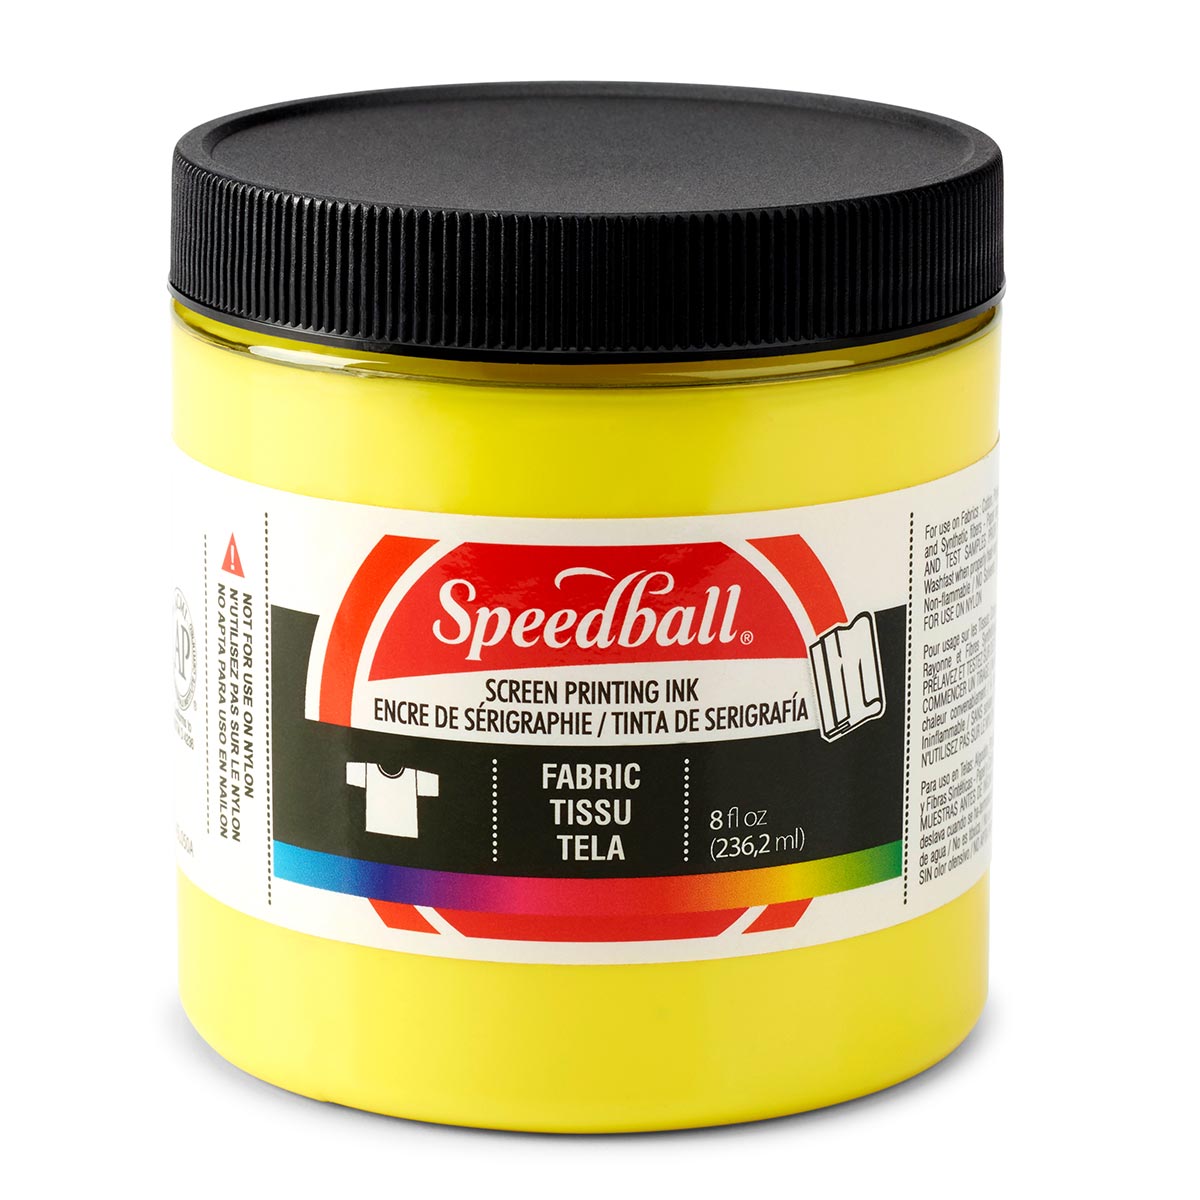 Speedball - Encre de sérigraphie pour tissu 236 ml (8 oz) - Jaune procédé